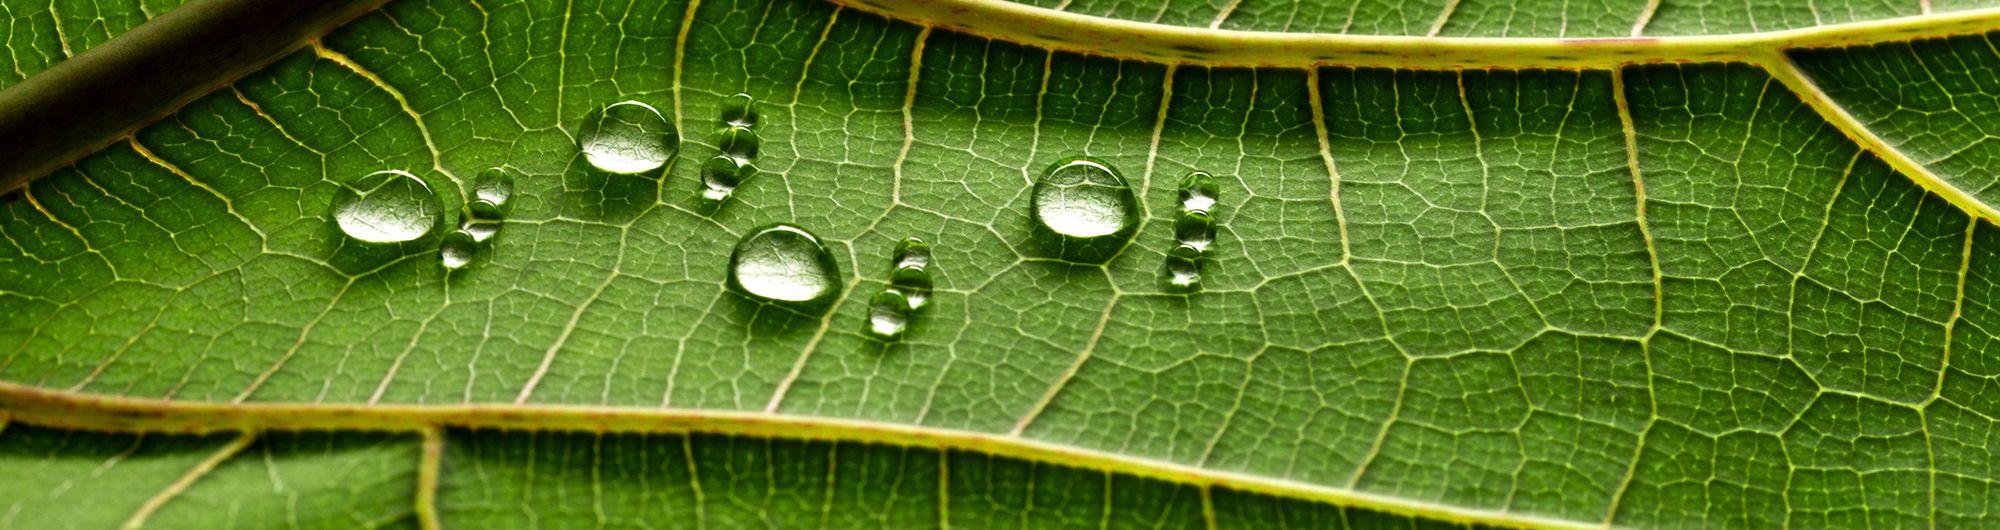 folha verde com gotículas de água